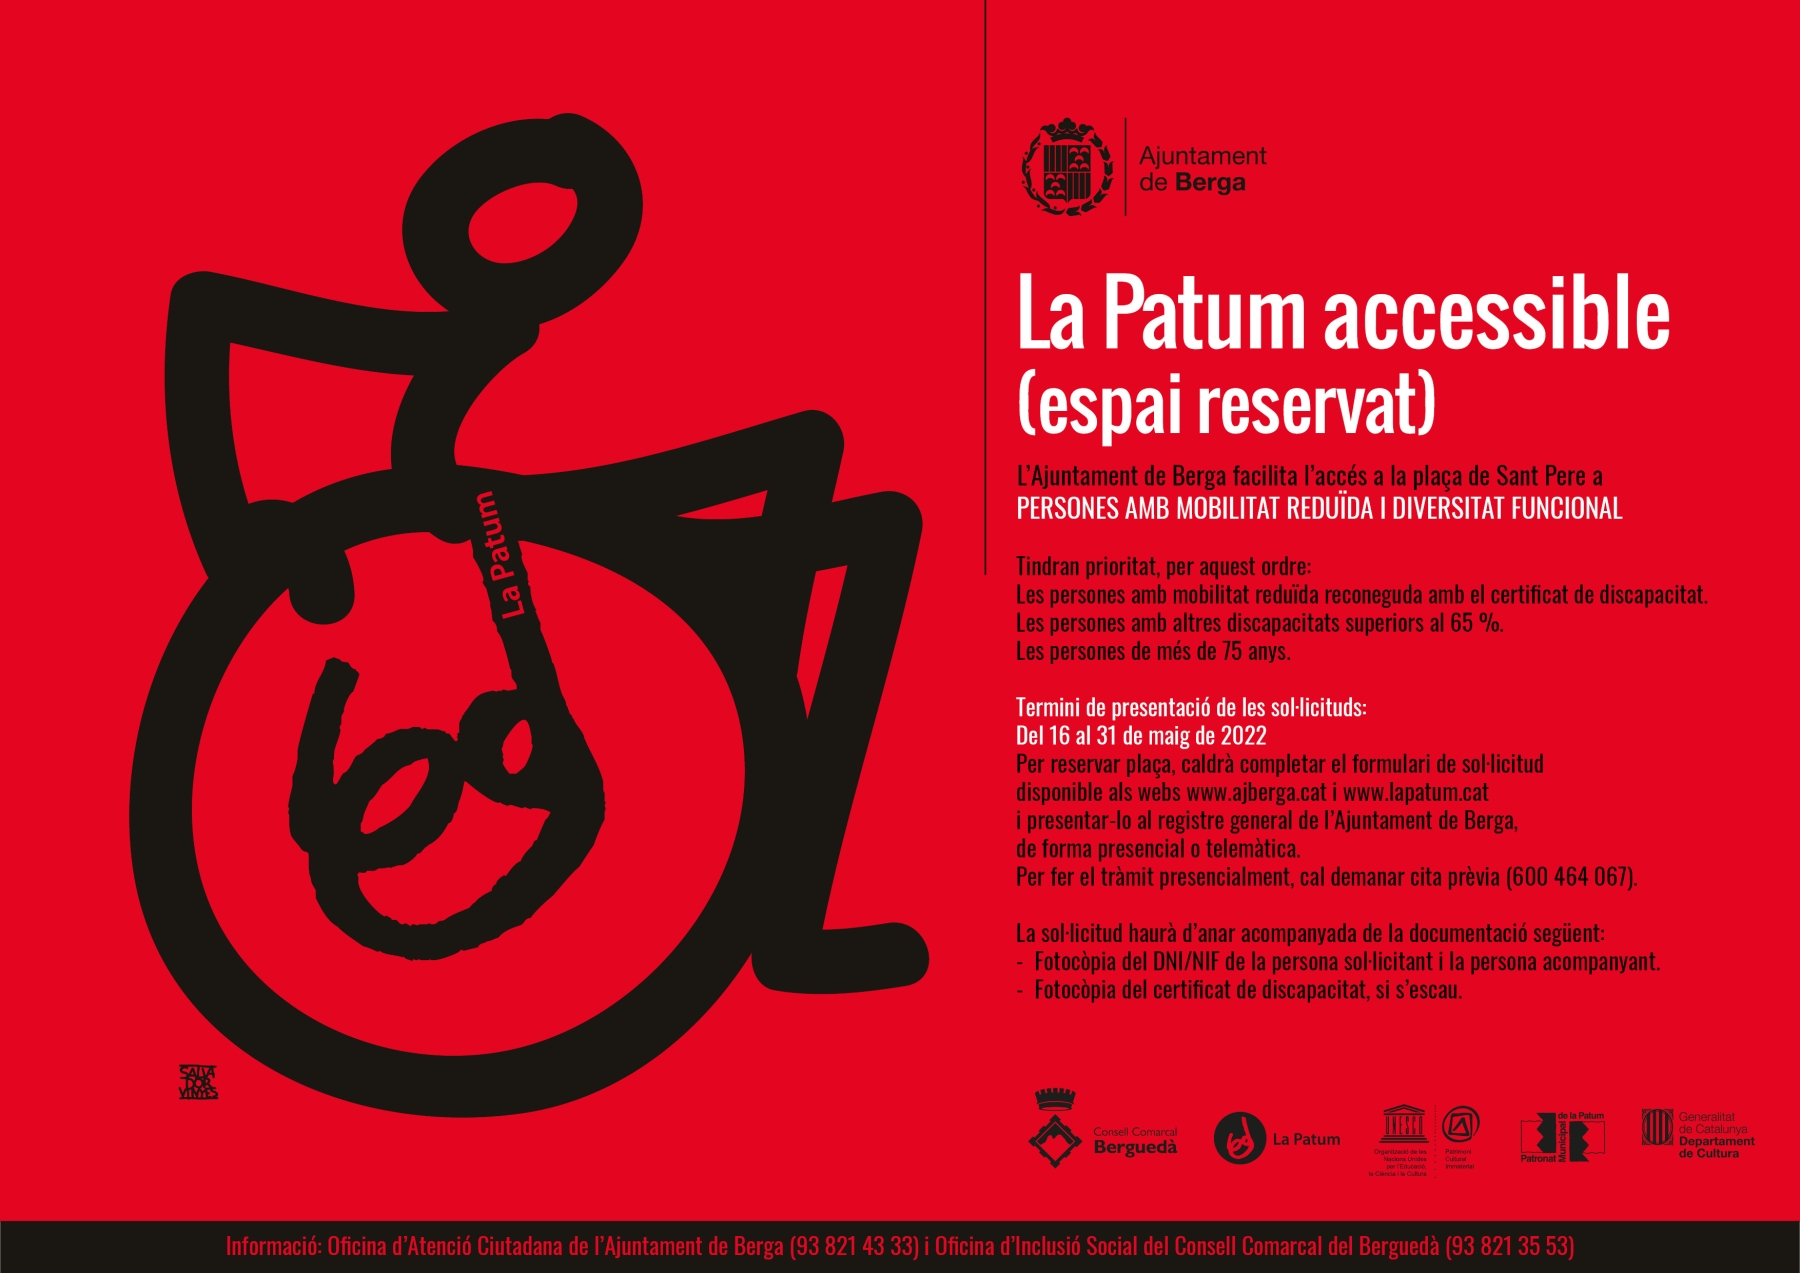 La Patum accessible obre la inscripció per accedir a l'espai reservat per a persones amb mobilitat reduïda i altres diversitats funcionals